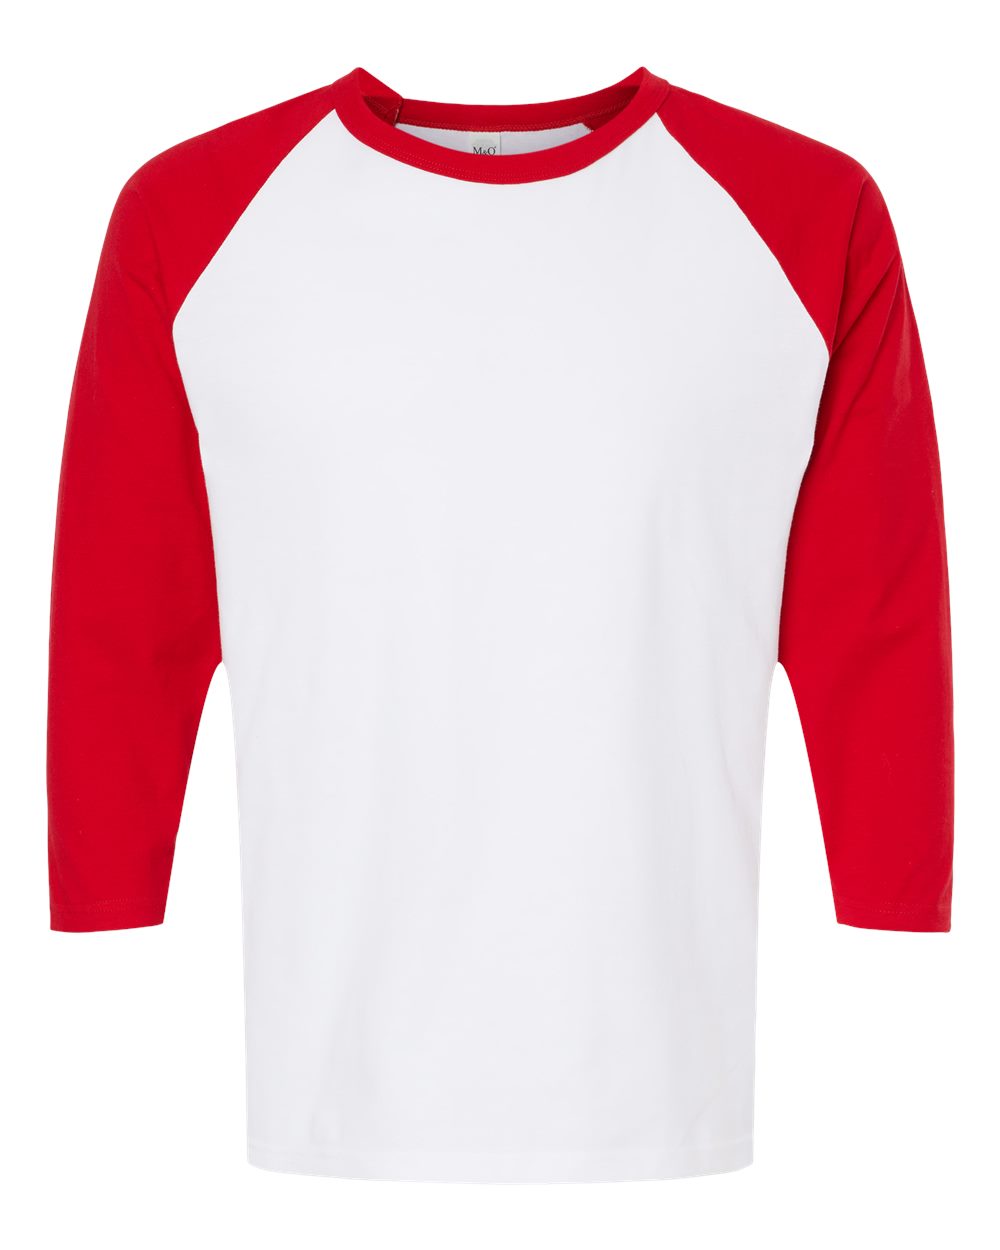 M&O Raglan Three-Quarter Sleeve Baseball T-Shirt 5540 #color_White/ Red